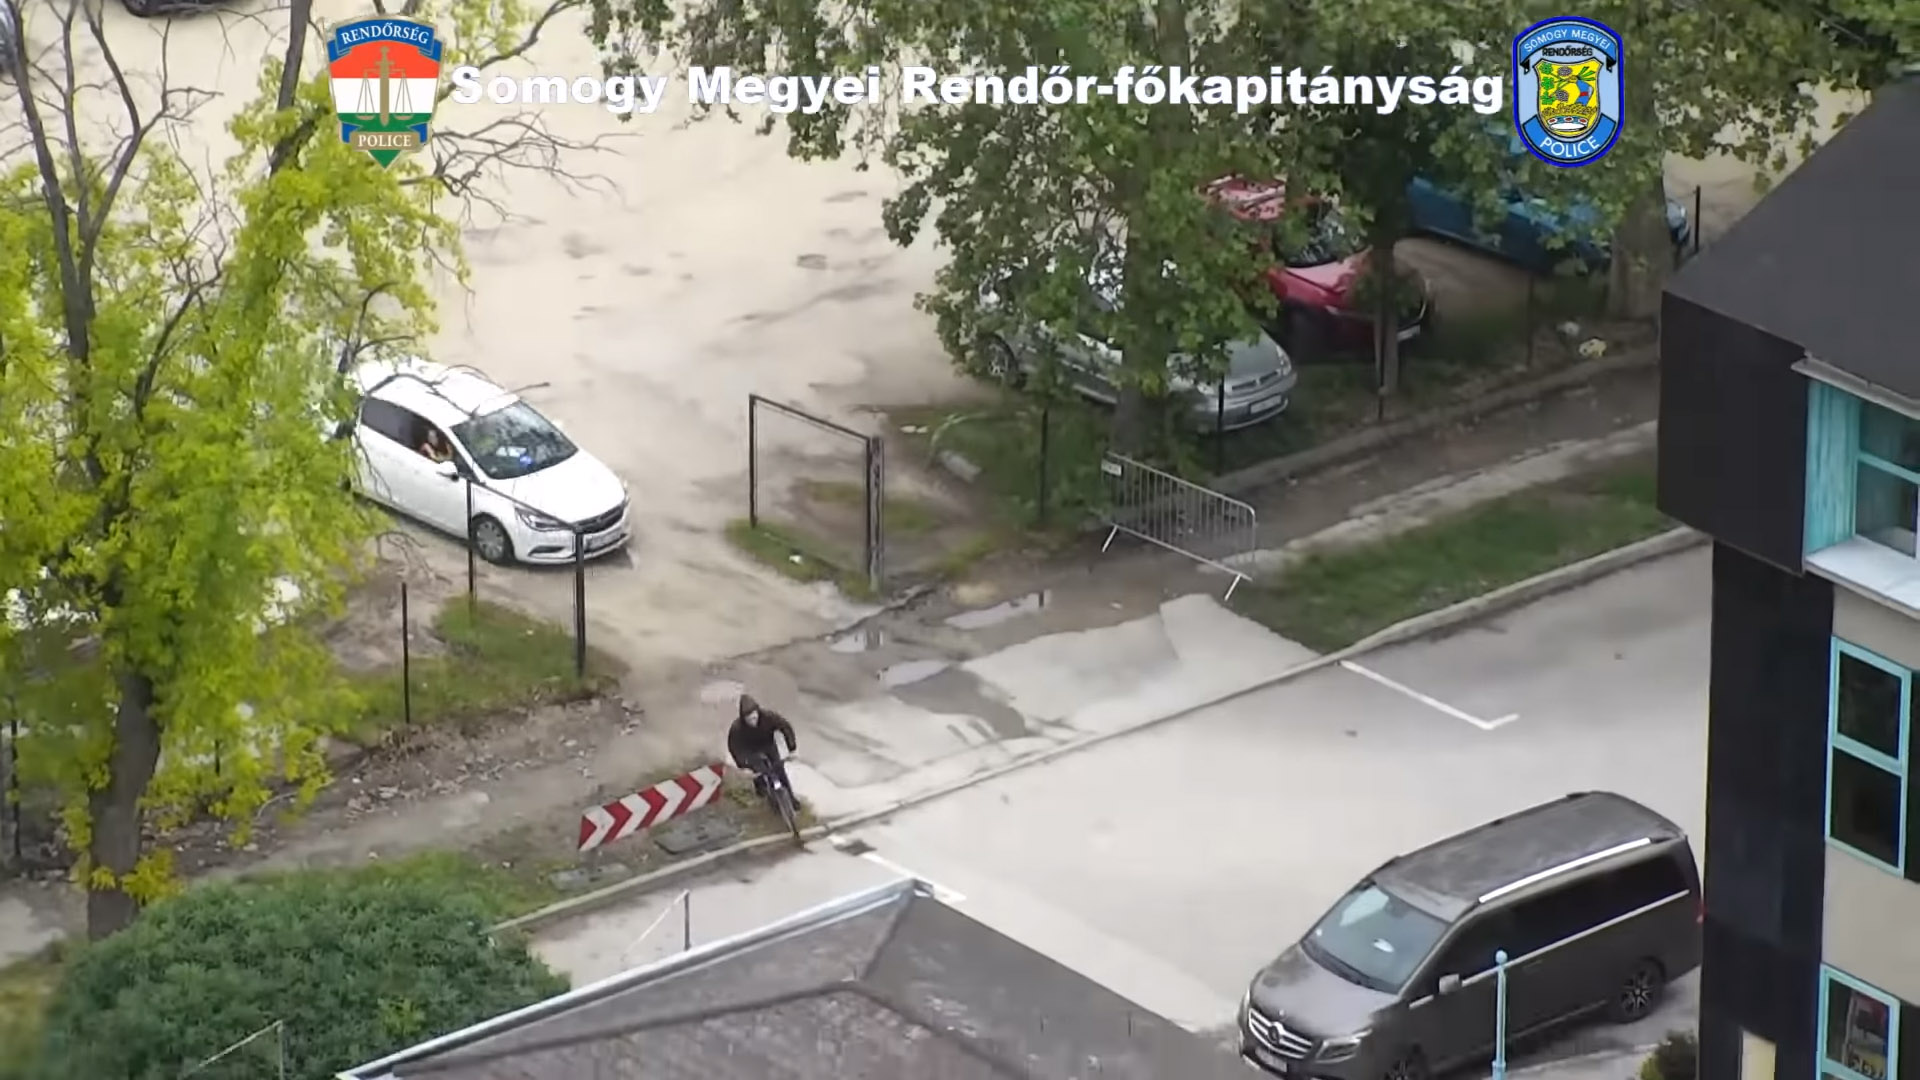 Kerékpárral menekült a rendőrök elől, közben át is öltözött – videó